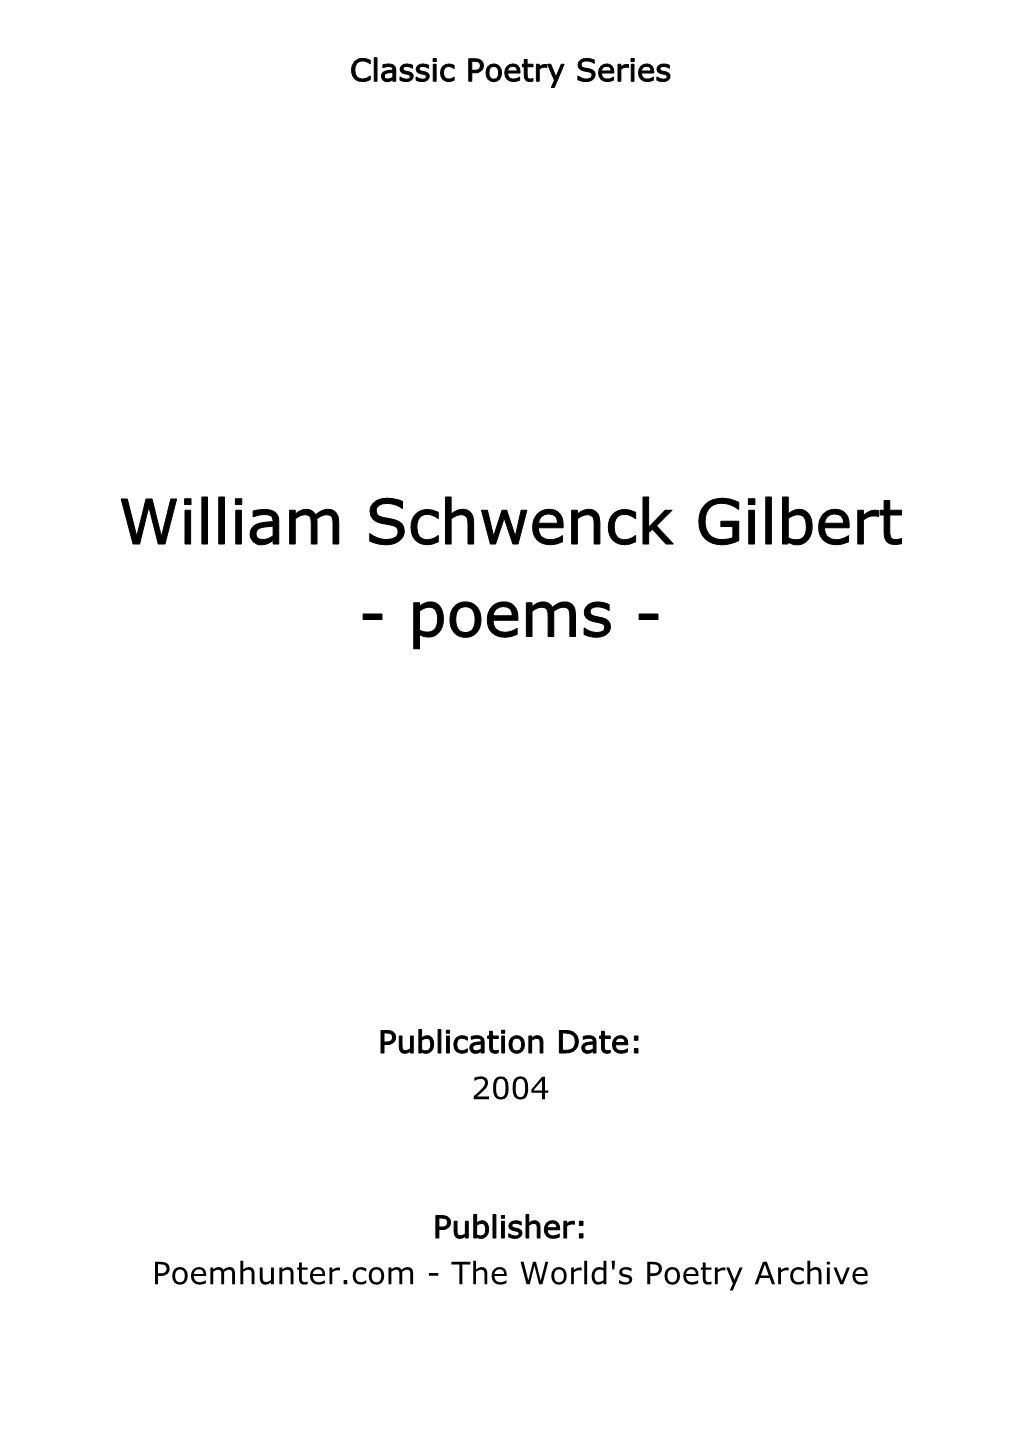 William Schwenck Gilbert - Poems